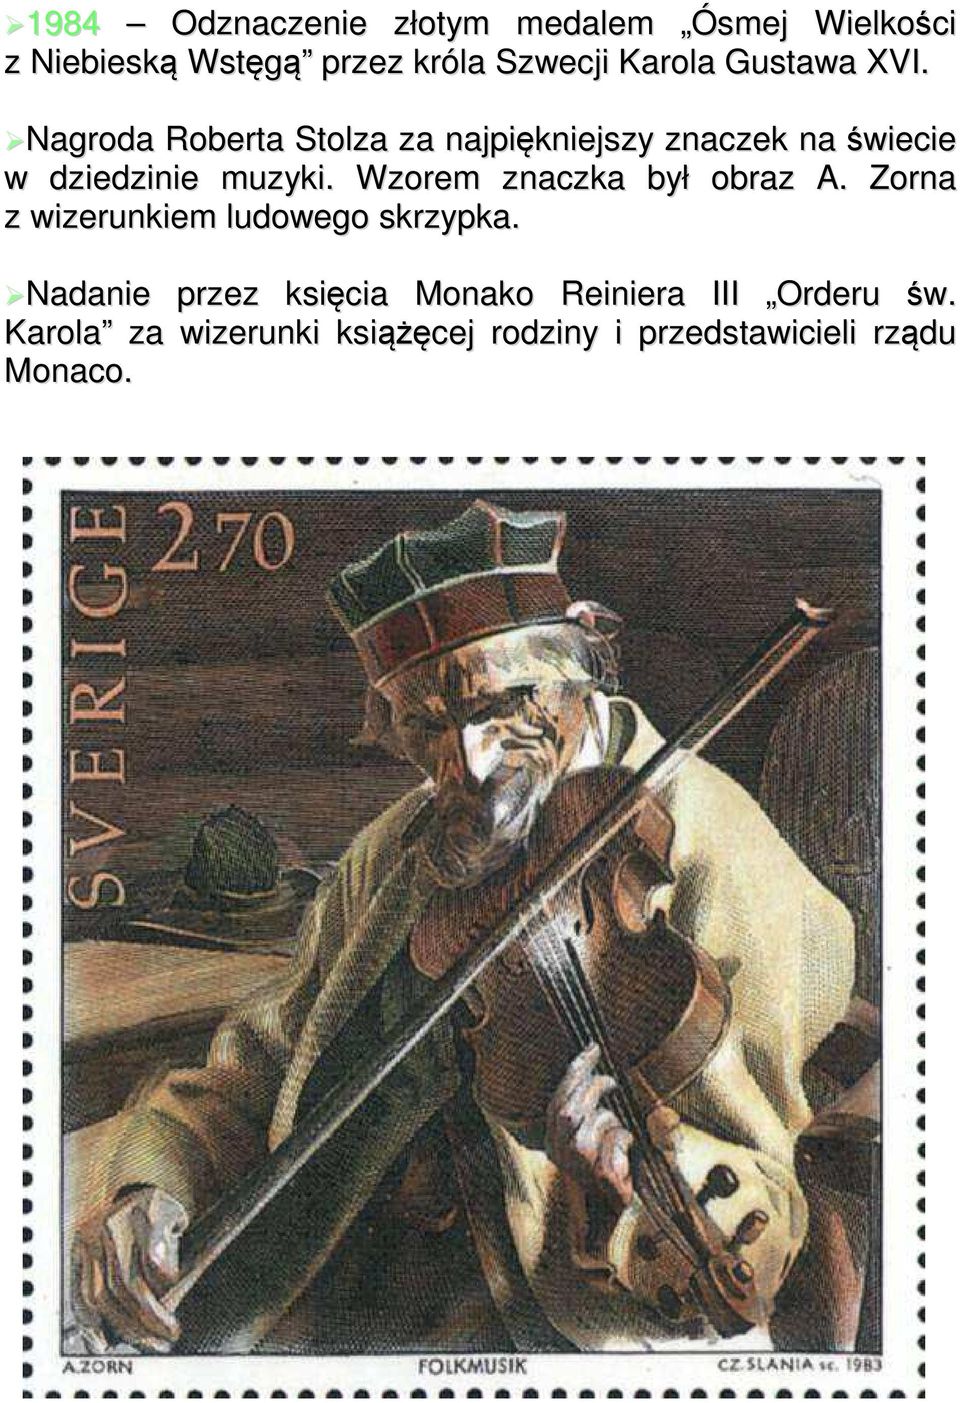 Wzorem znaczka był obraz A. Zorna z wizerunkiem ludowego skrzypka.